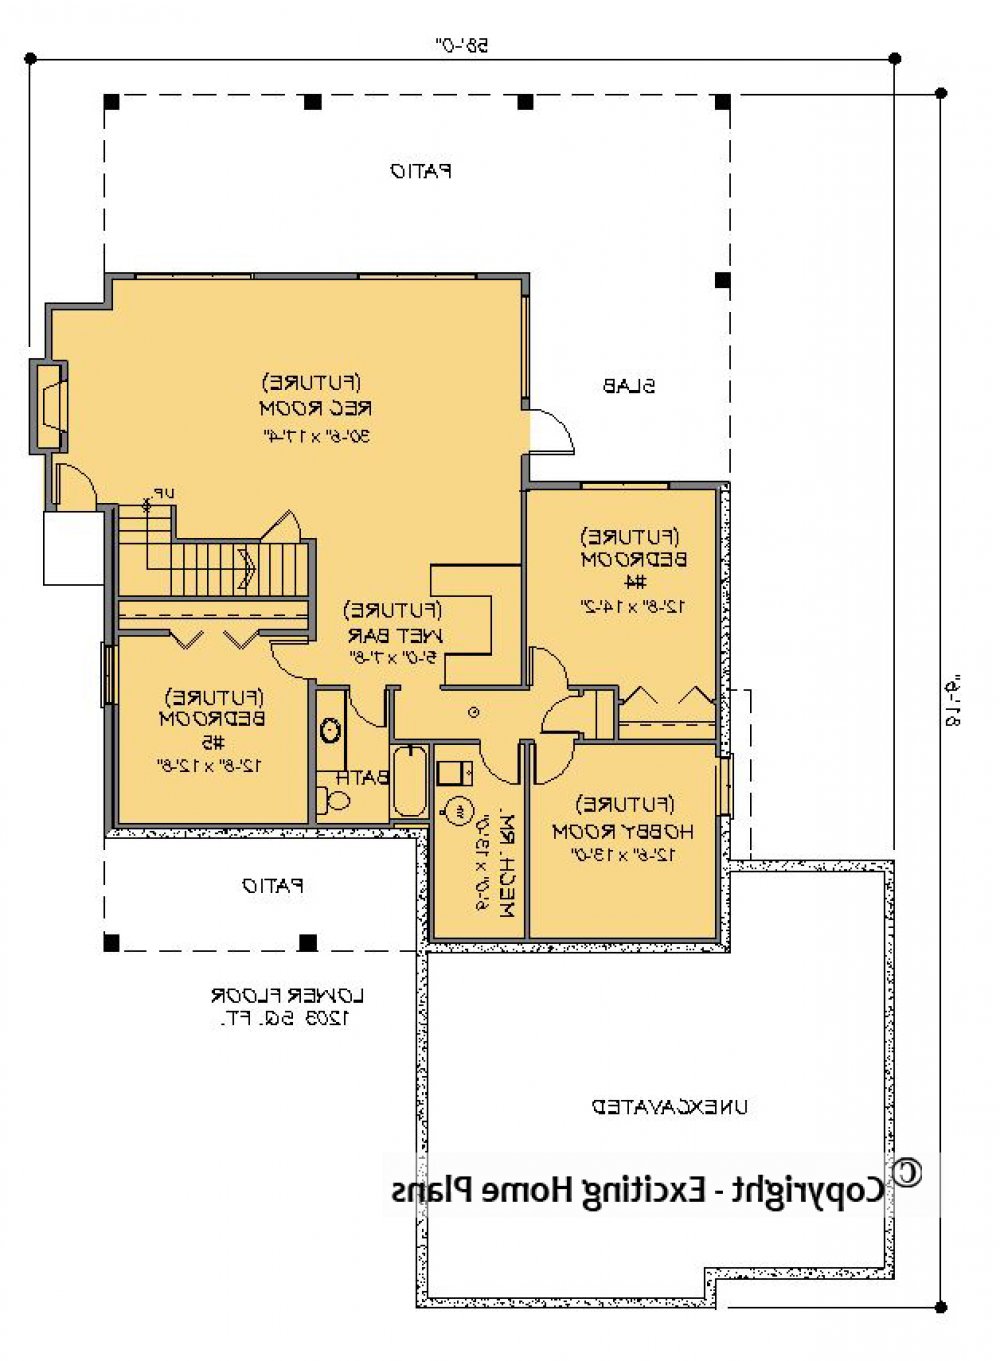 House Plan E1322-10 Lower Floor Plan REVERSE